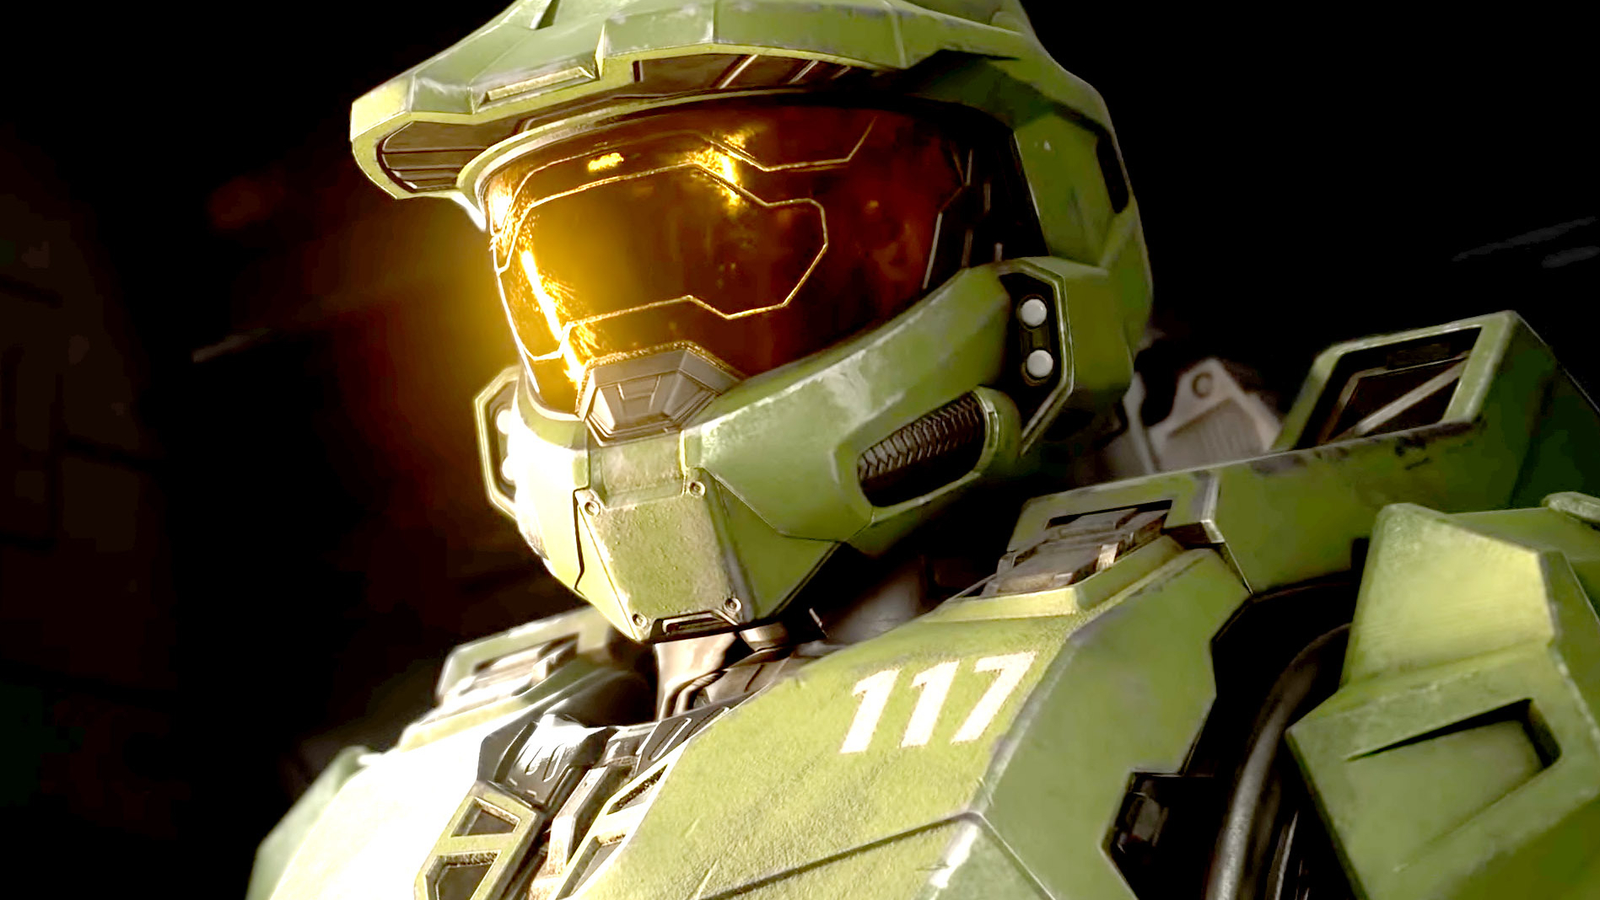 Halo: série ganha novo trailer e data de estreia; confira!